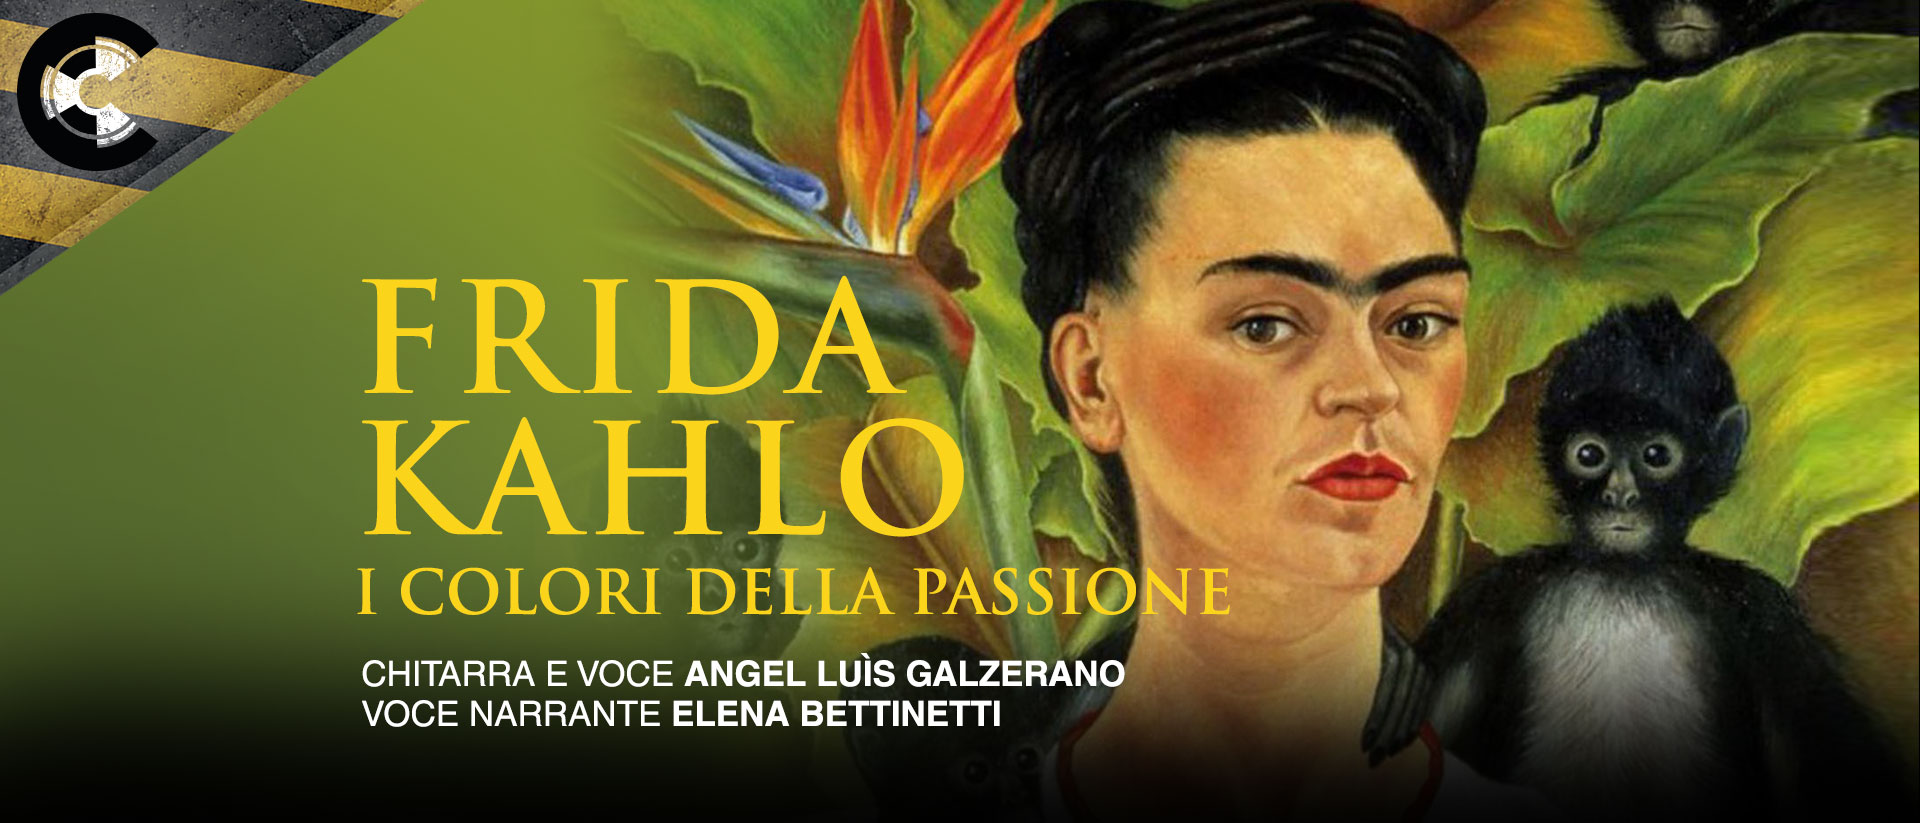 Frida Kahlo, i colori della passione 